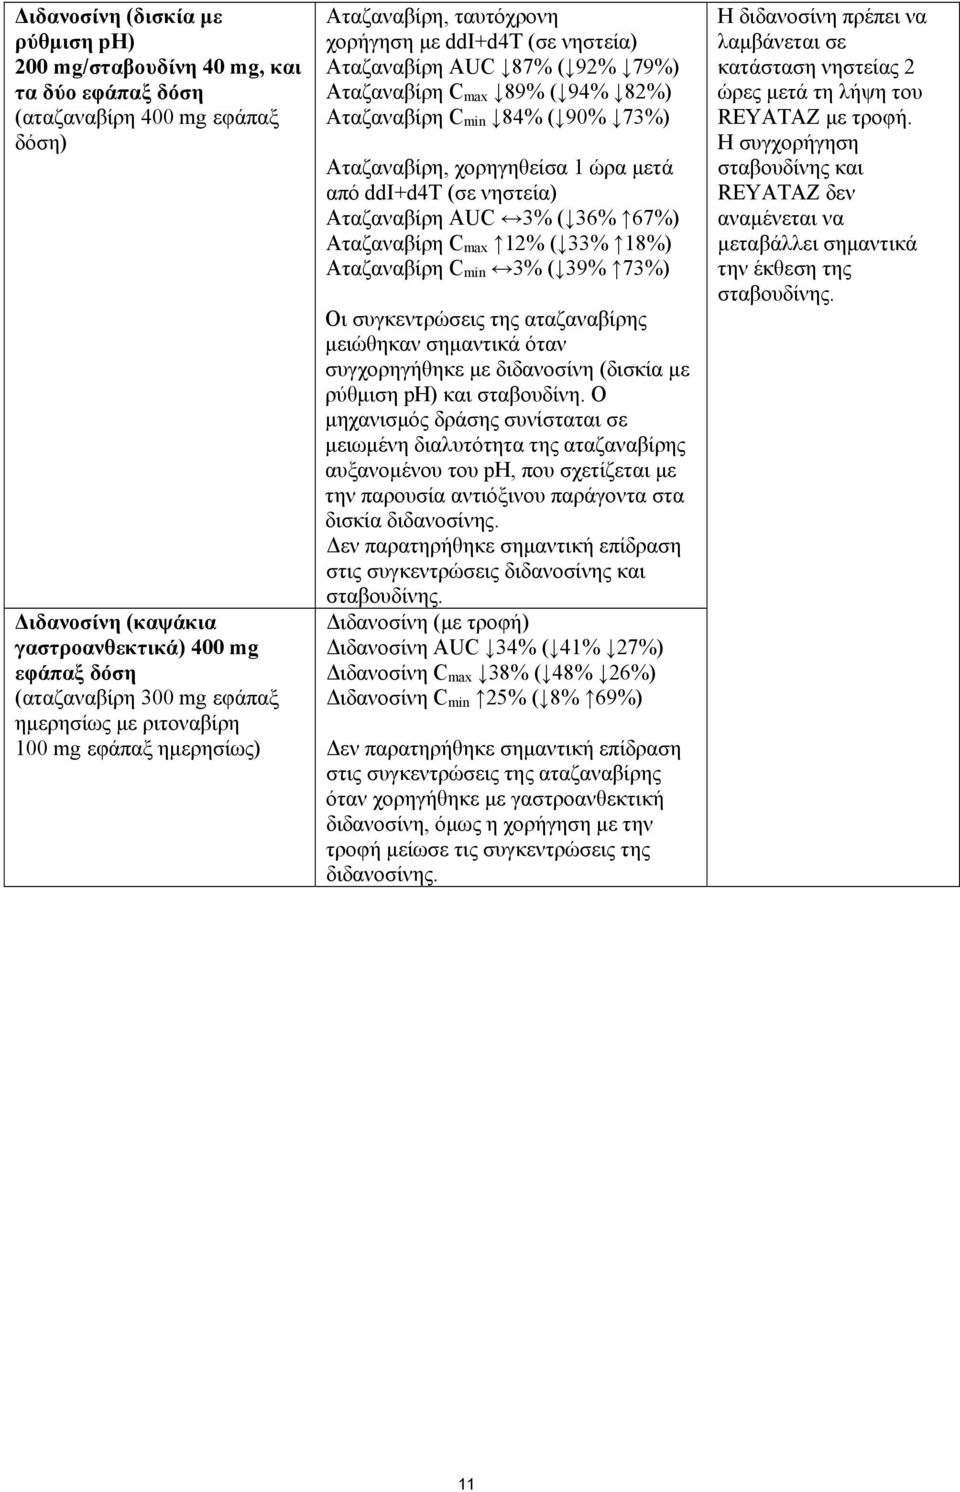 73%) Αταζαναβίρη, χορηγηθείσα 1 ώρα μετά από ddi+d4t (σε νηστεία) Αταζαναβίρη AUC 3% ( 36% 67%) Αταζαναβίρη C max 12% ( 33% 18%) Αταζαναβίρη C min 3% ( 39% 73%) Οι συγκεντρώσεις της αταζαναβίρης